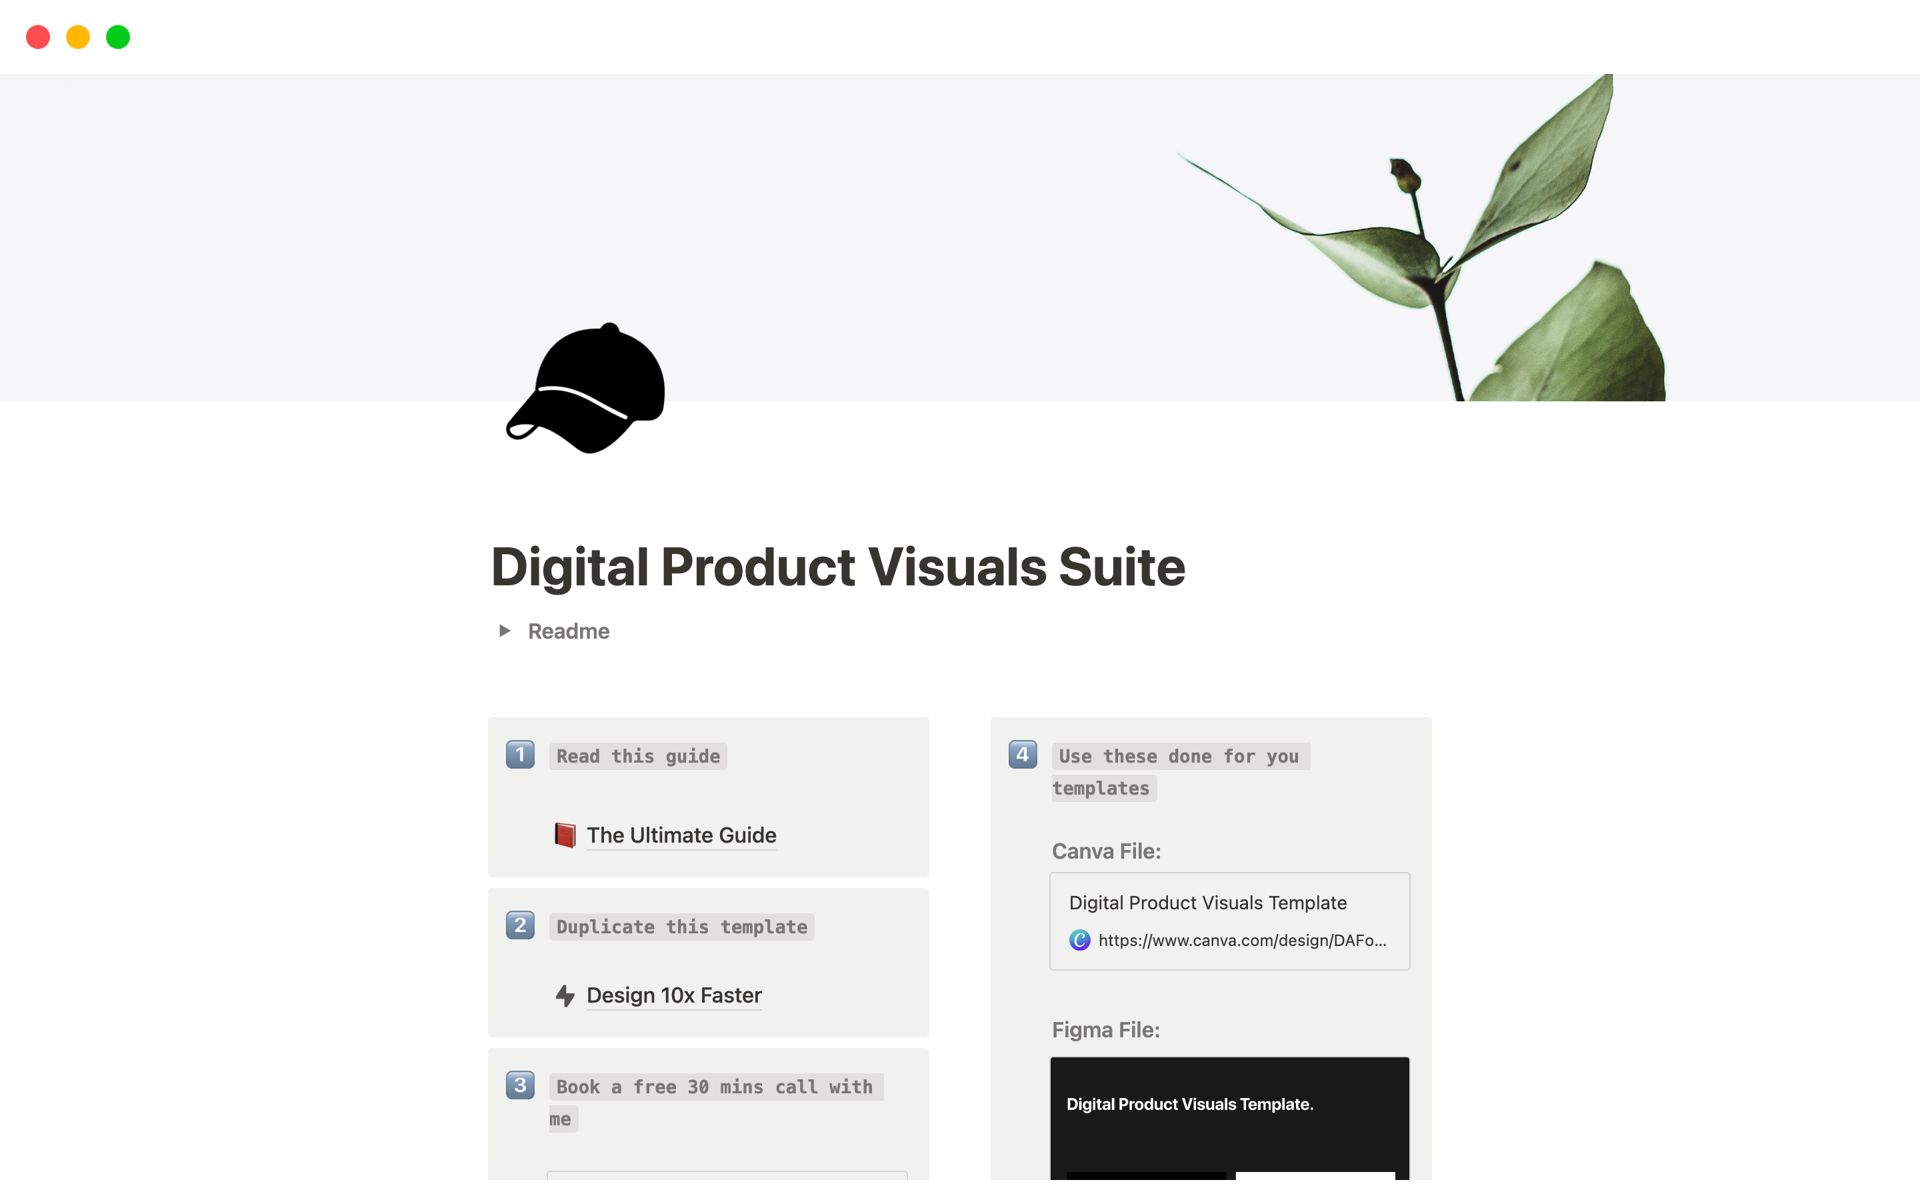 Vista previa de una plantilla para Digital Product Visuals Suite